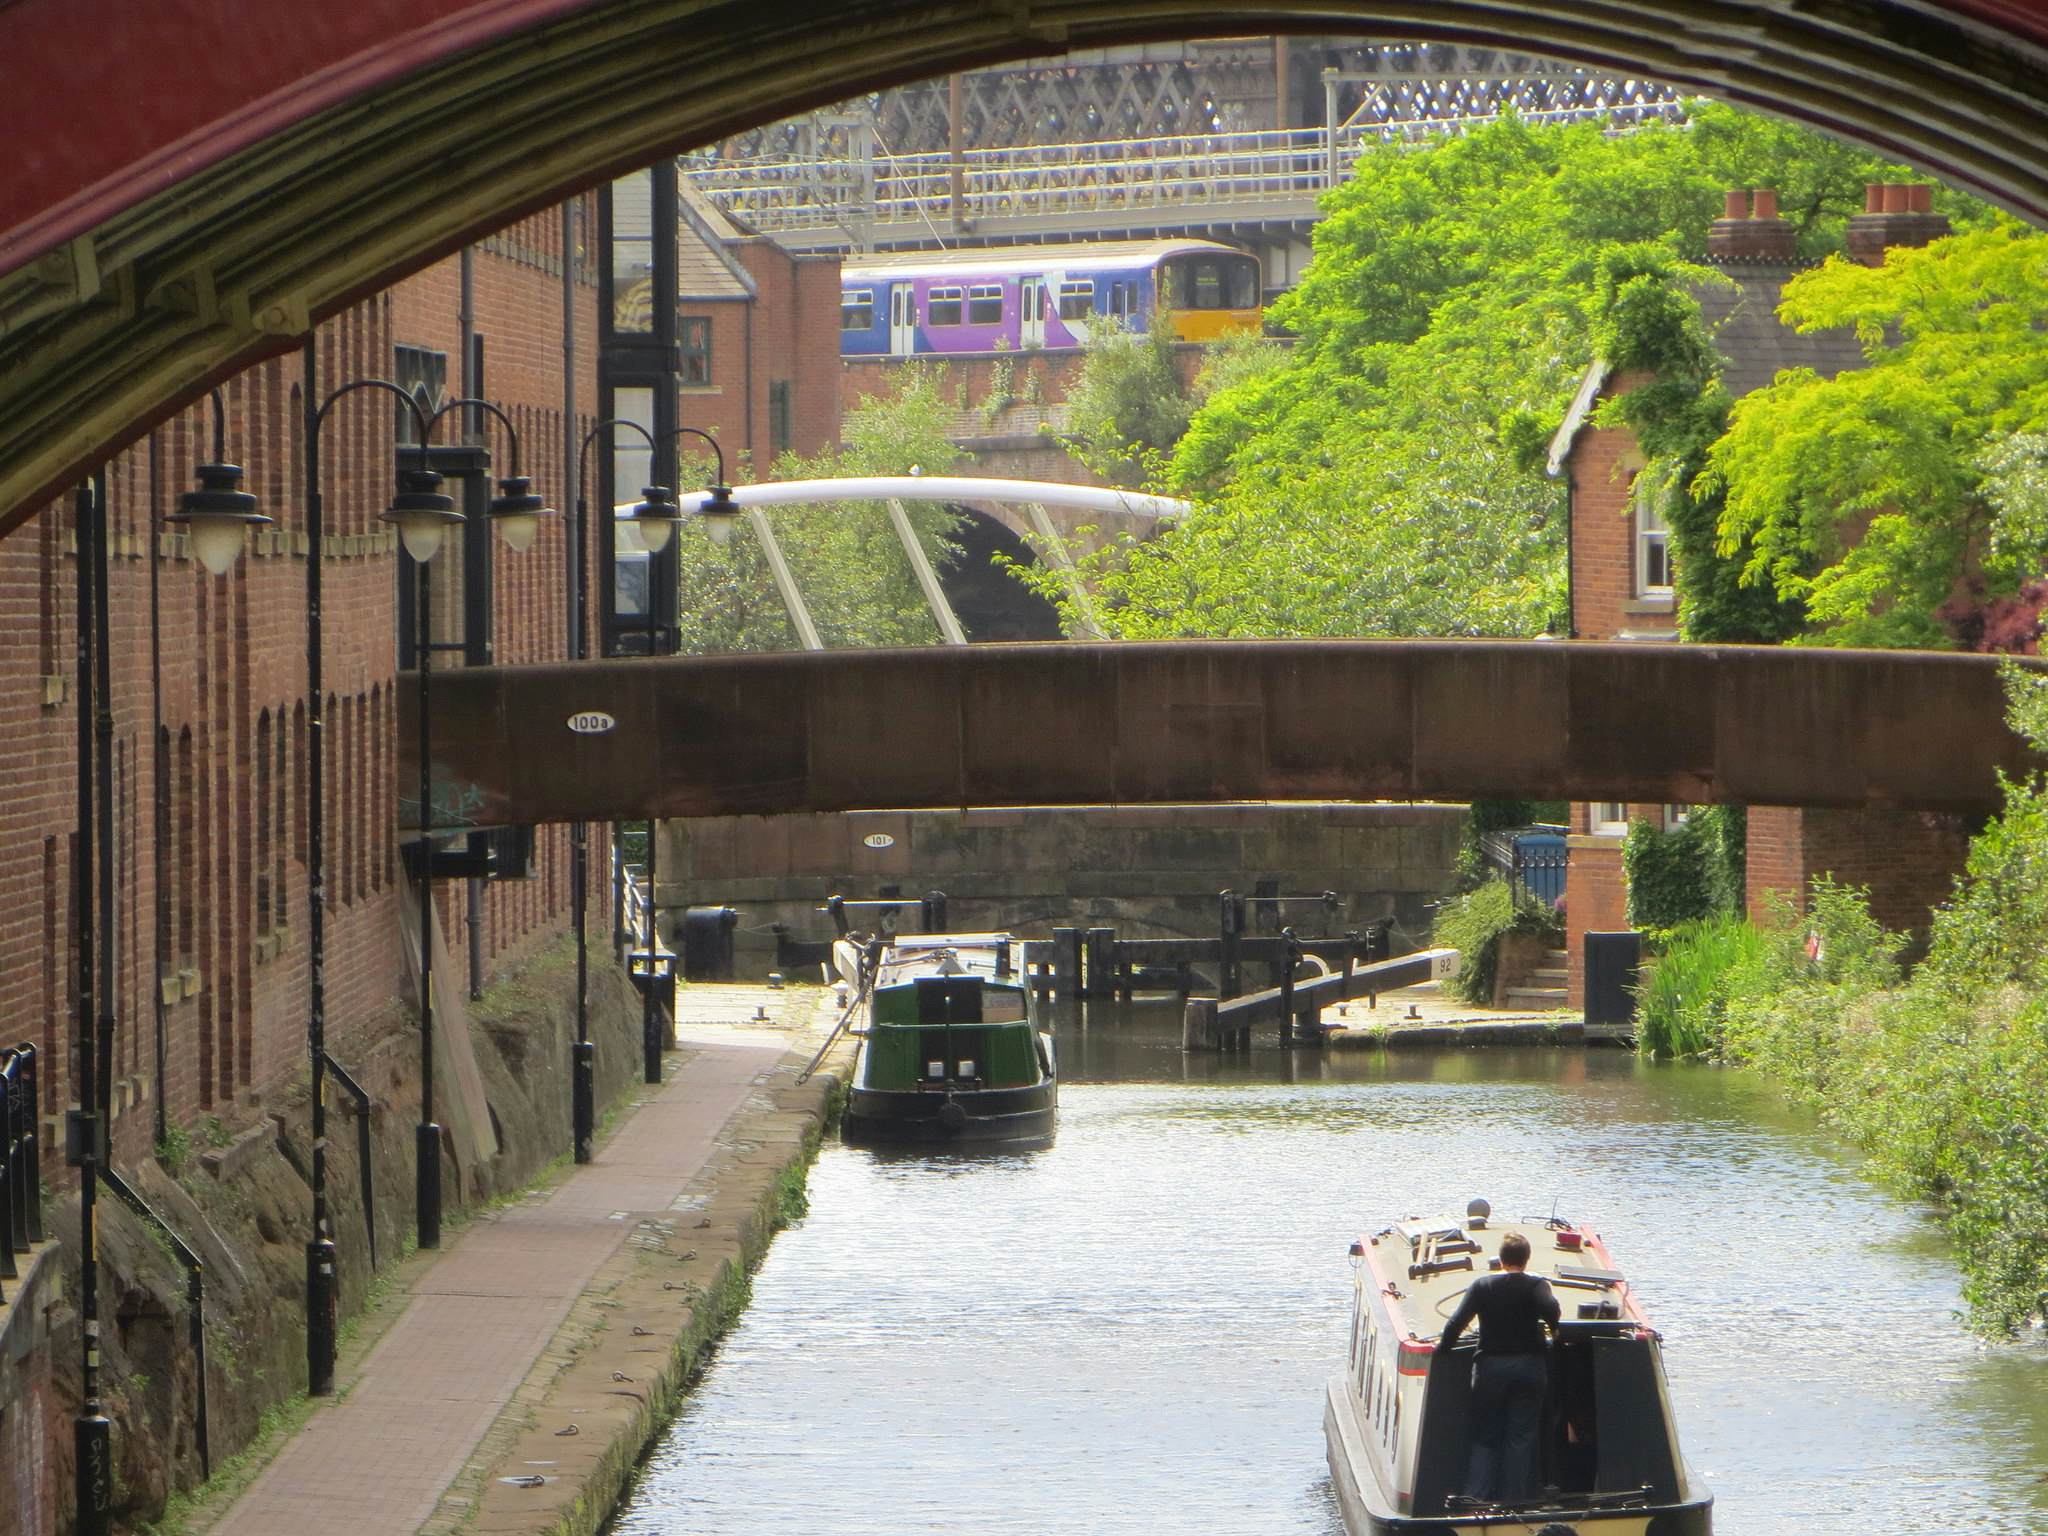 The Rochdale Canal St Tow Path Bridge